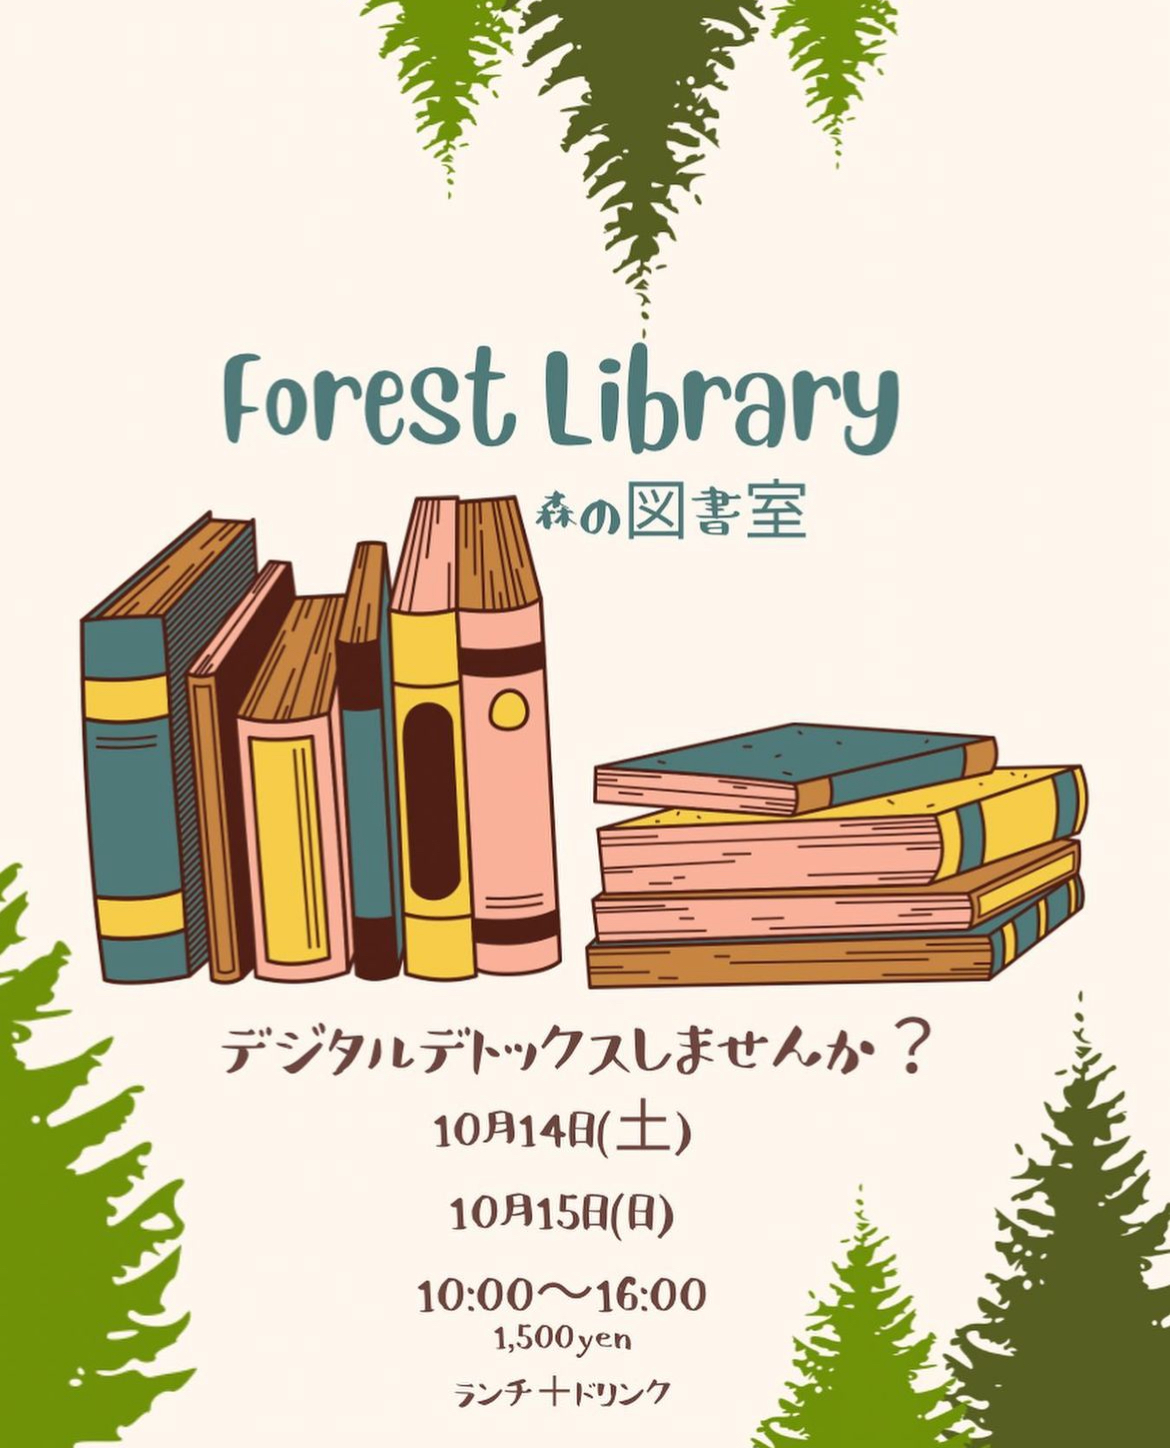 りゅうずの森 森の図書館